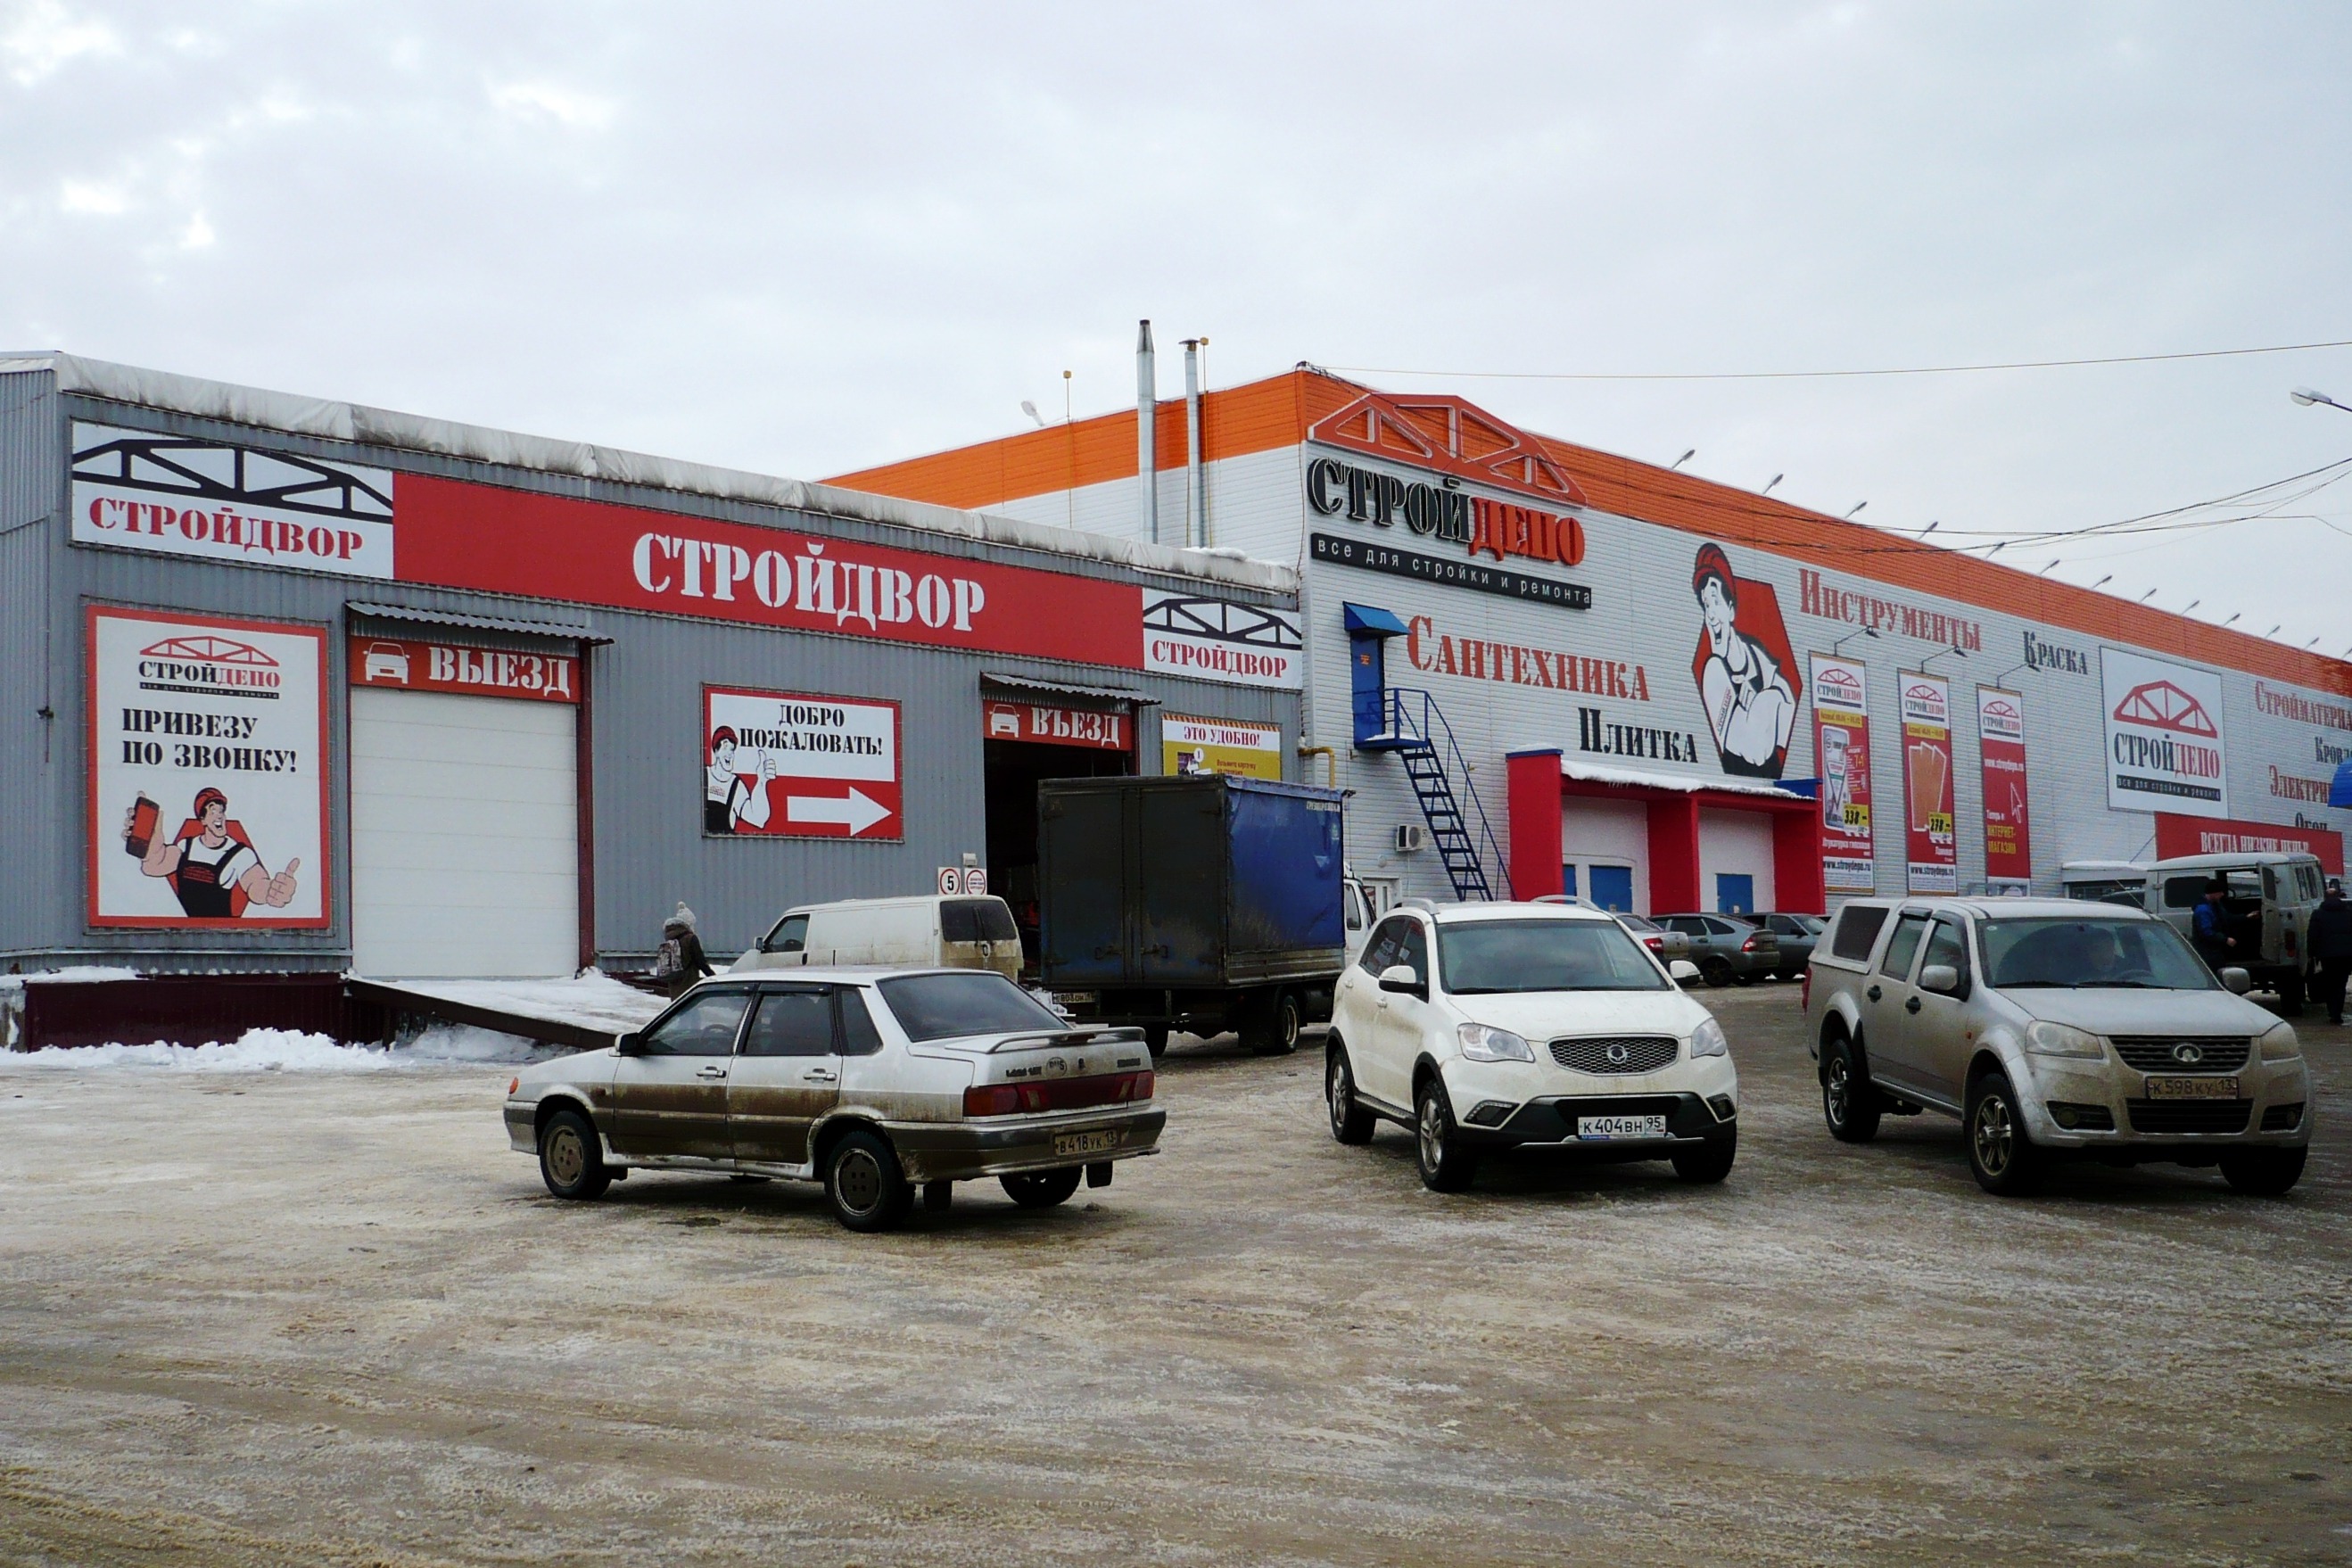 Стройдвор чебоксары сайт. Рынок на Юго западе Саранск. Стройдепо Саранск. Стройдепо супермаркет. Стройдепо магазины.